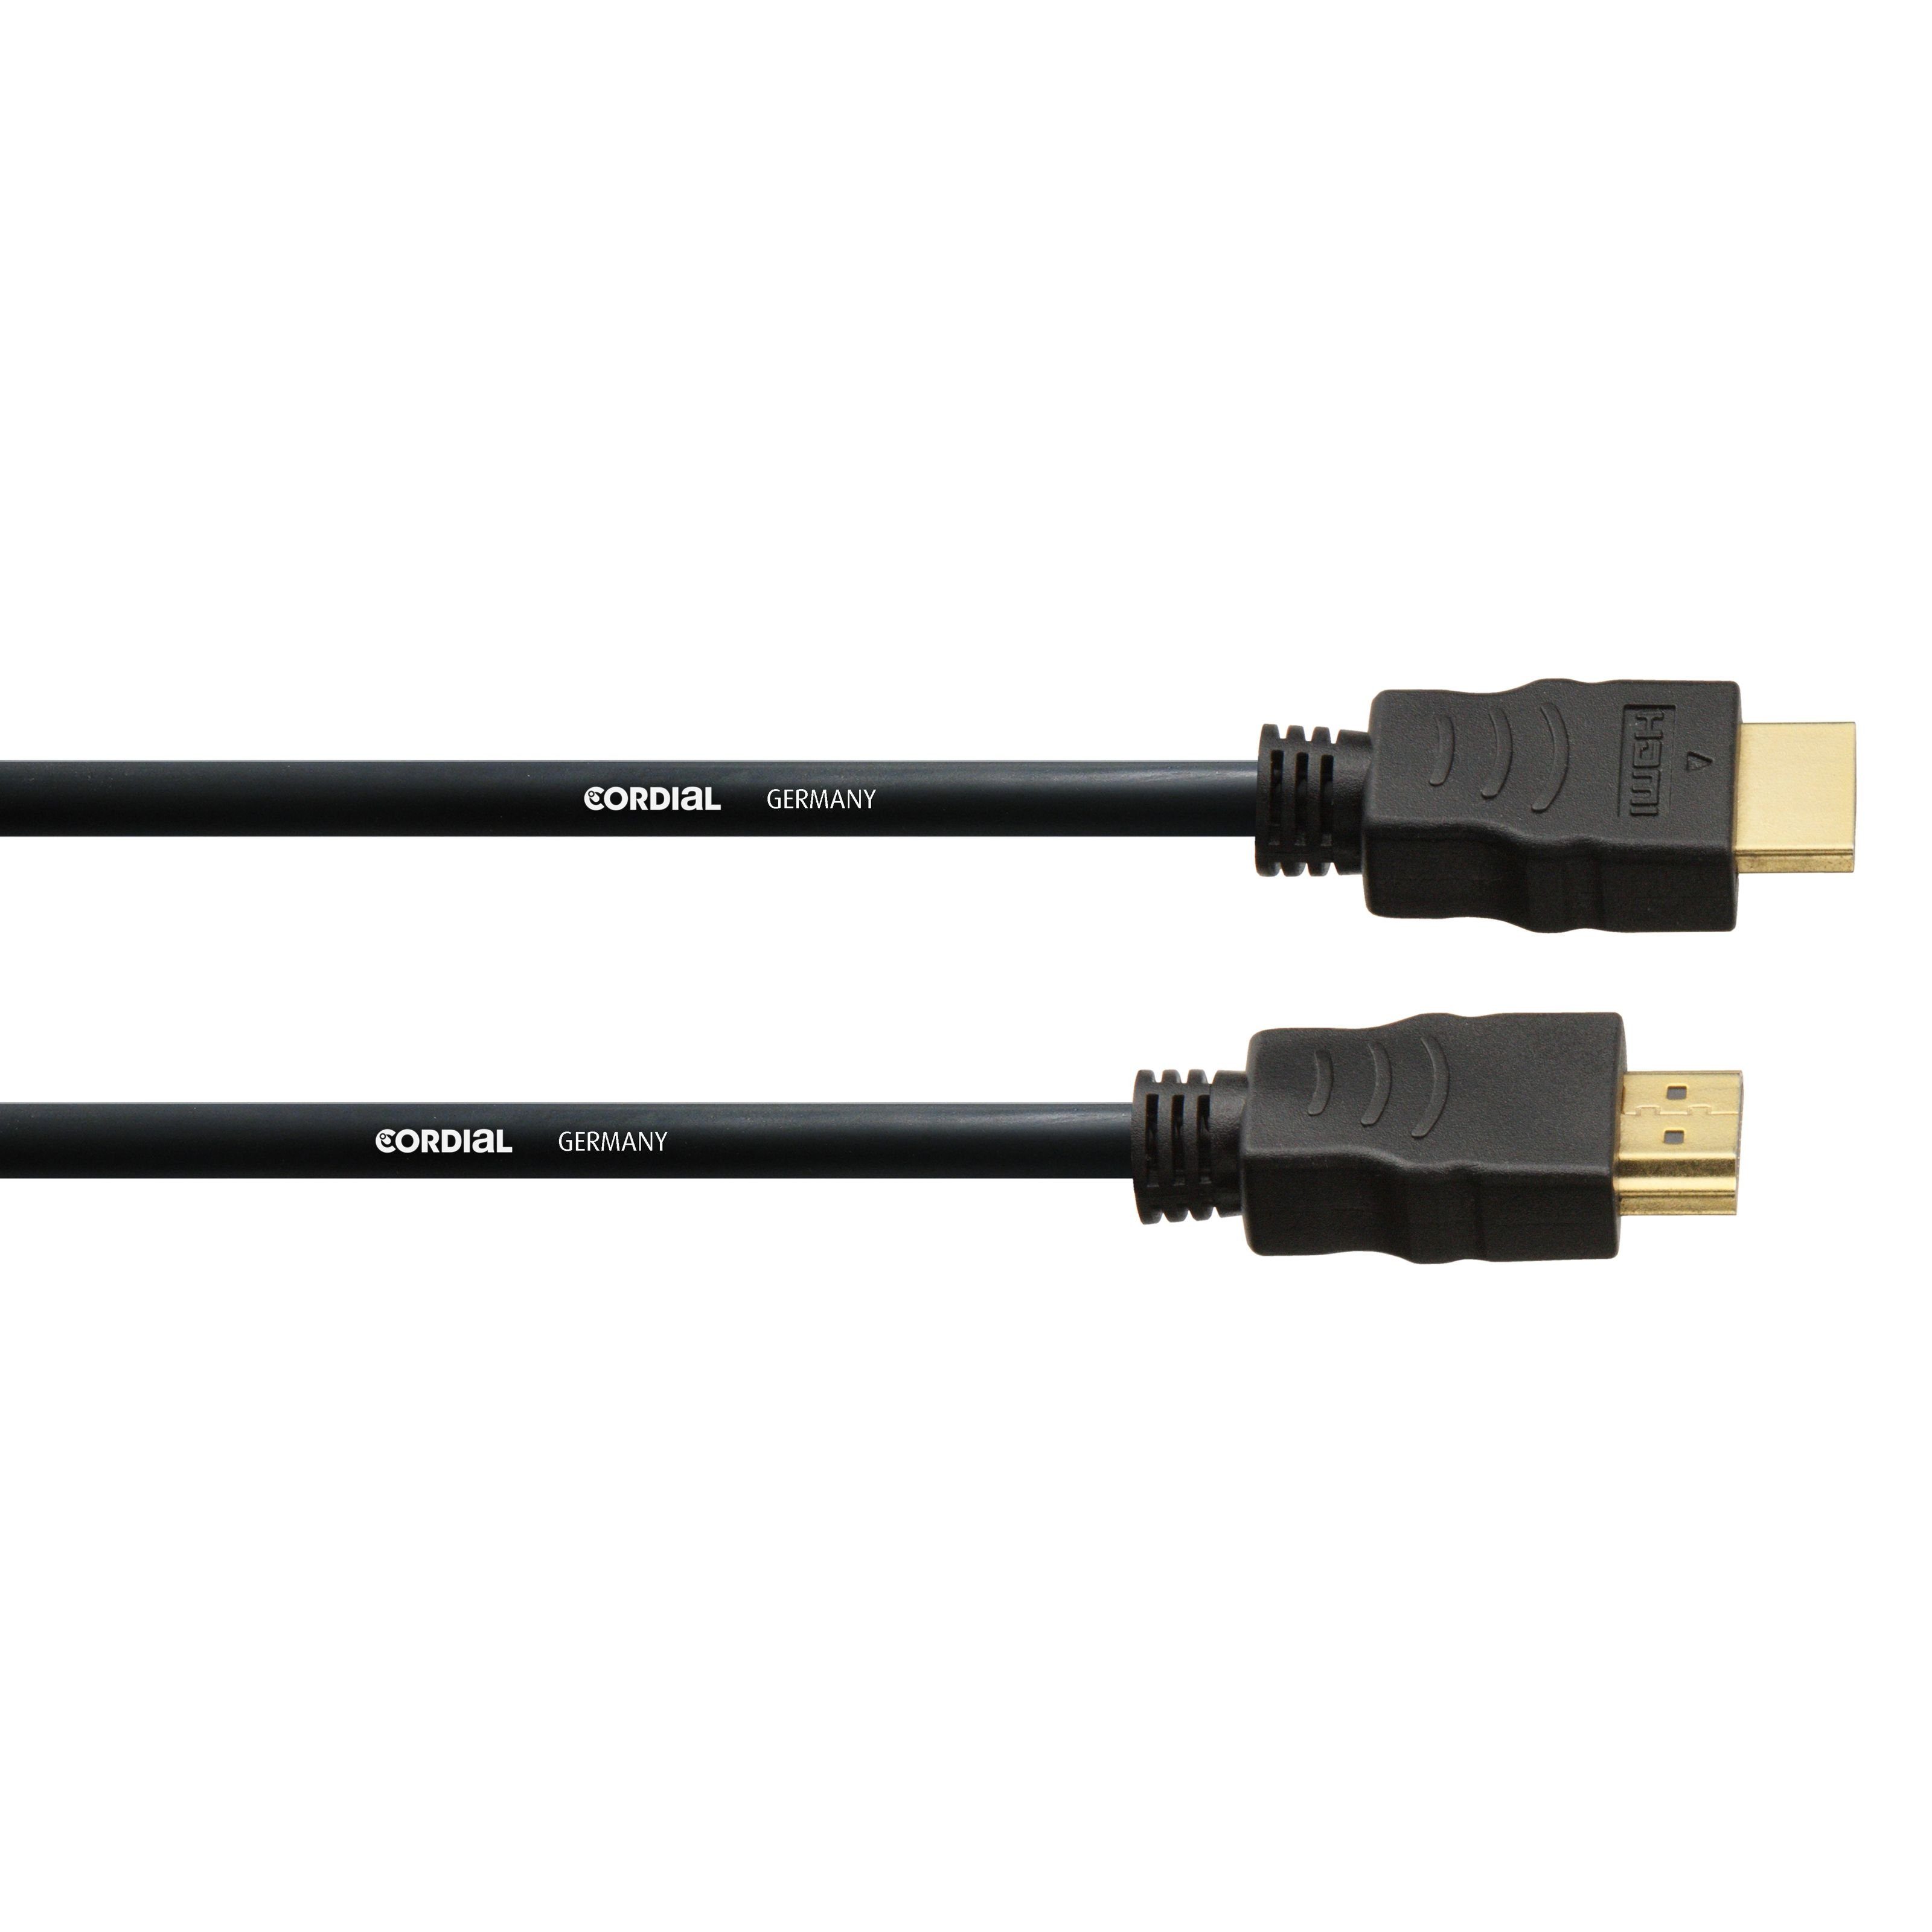 Cordial Spielzeug-Musikinstrument, CHDMI 1 HDMI Kabel 1 m - Kabel